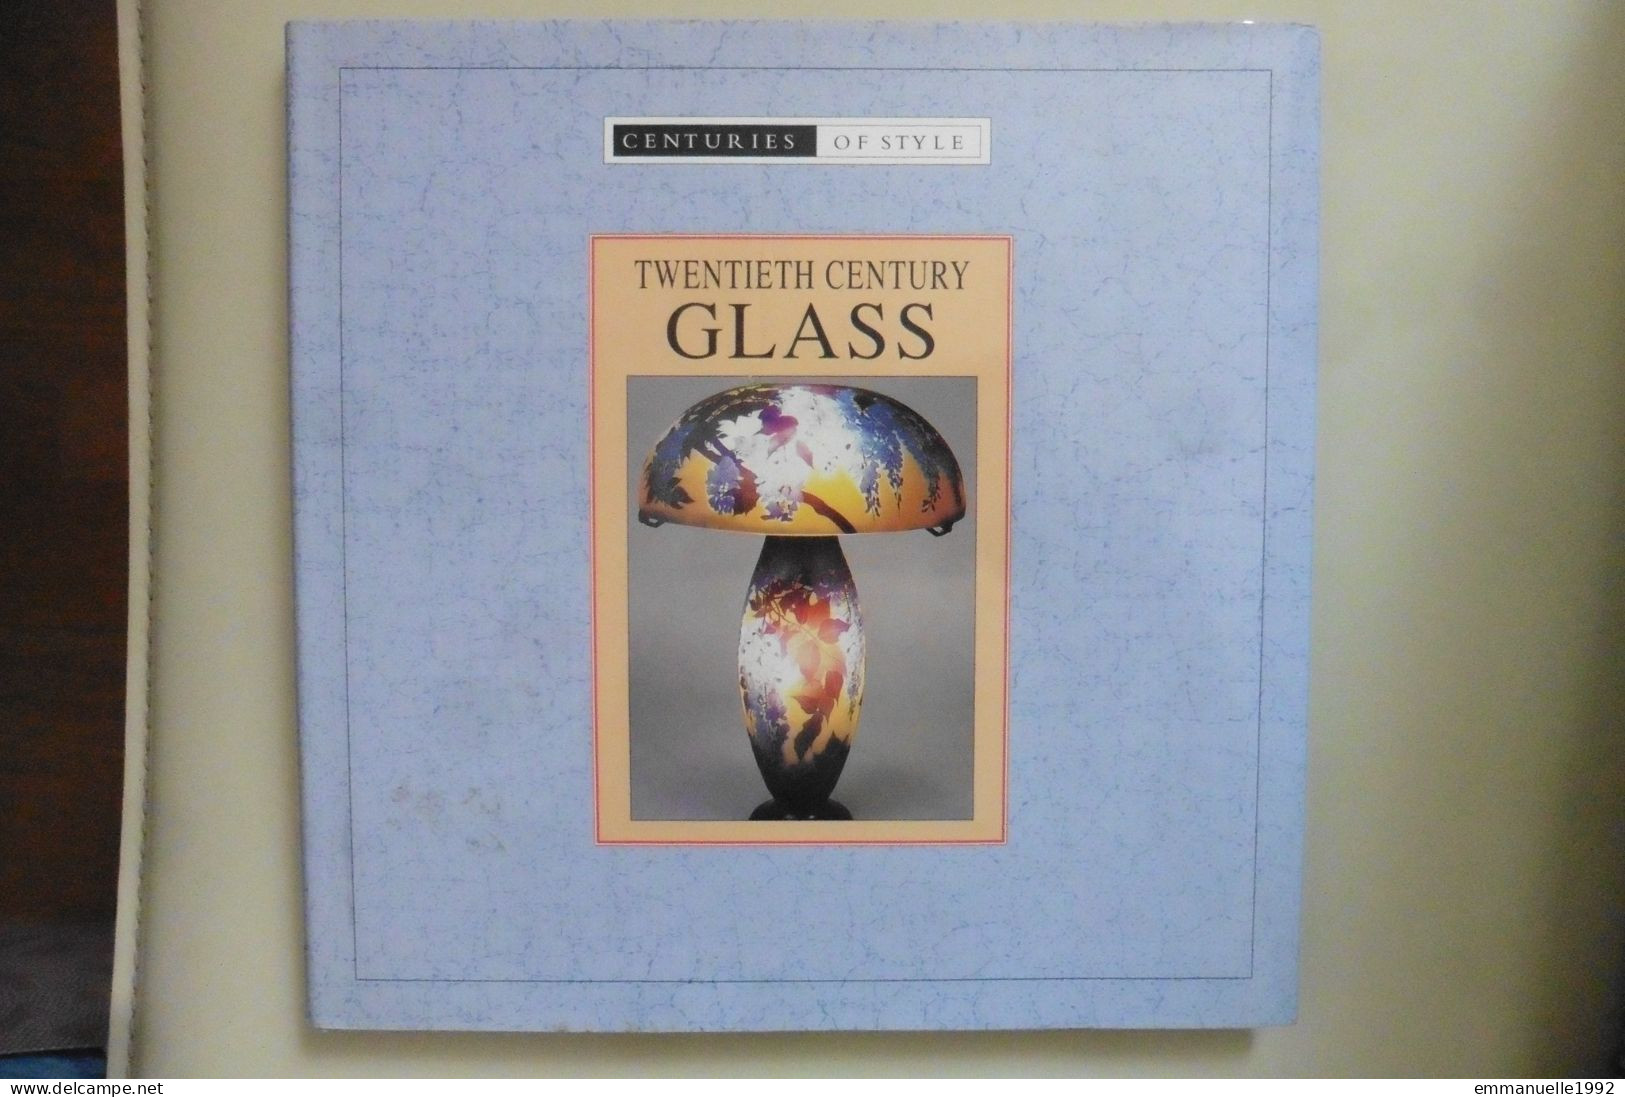 Livre Twentieth Century Glass - Le Verre Au 20e Siècle Art Deco Lalique Baccarat Tiffany Etc - English Text - Beaux-Arts